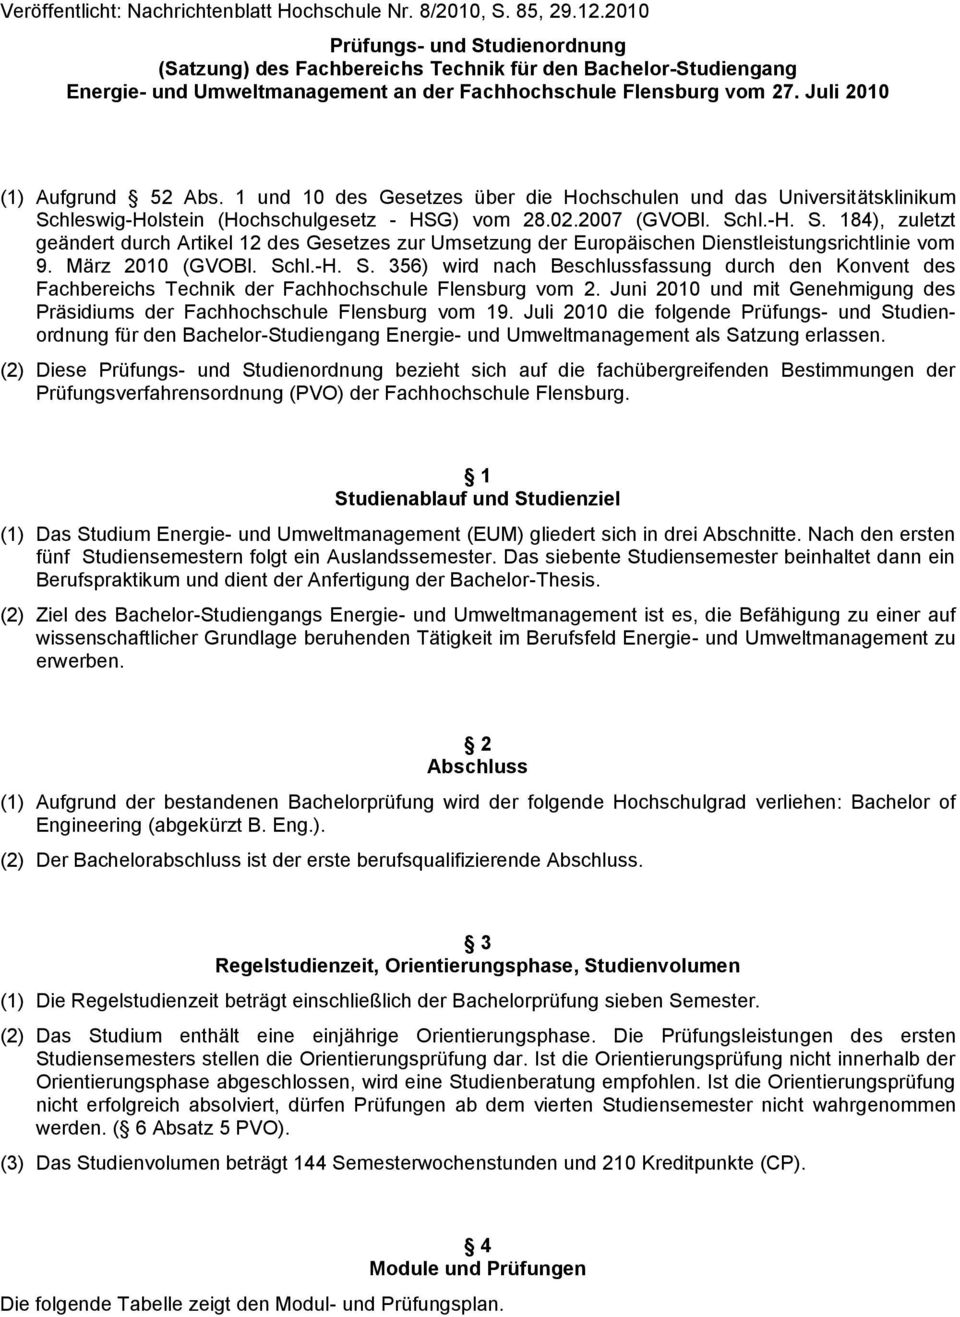 1 und 10 des Gesetzes über die Hochschulen und das Universitätsklinikum Schleswig-Holstein (Hochschulgesetz - HSG) vom 28.02.2007 (GVOBl. Schl.-H. S. 184), zuletzt geändert durch Artikel 12 des Gesetzes zur Umsetzung der Europäischen Dienstleistungsrichtlinie vom 9.